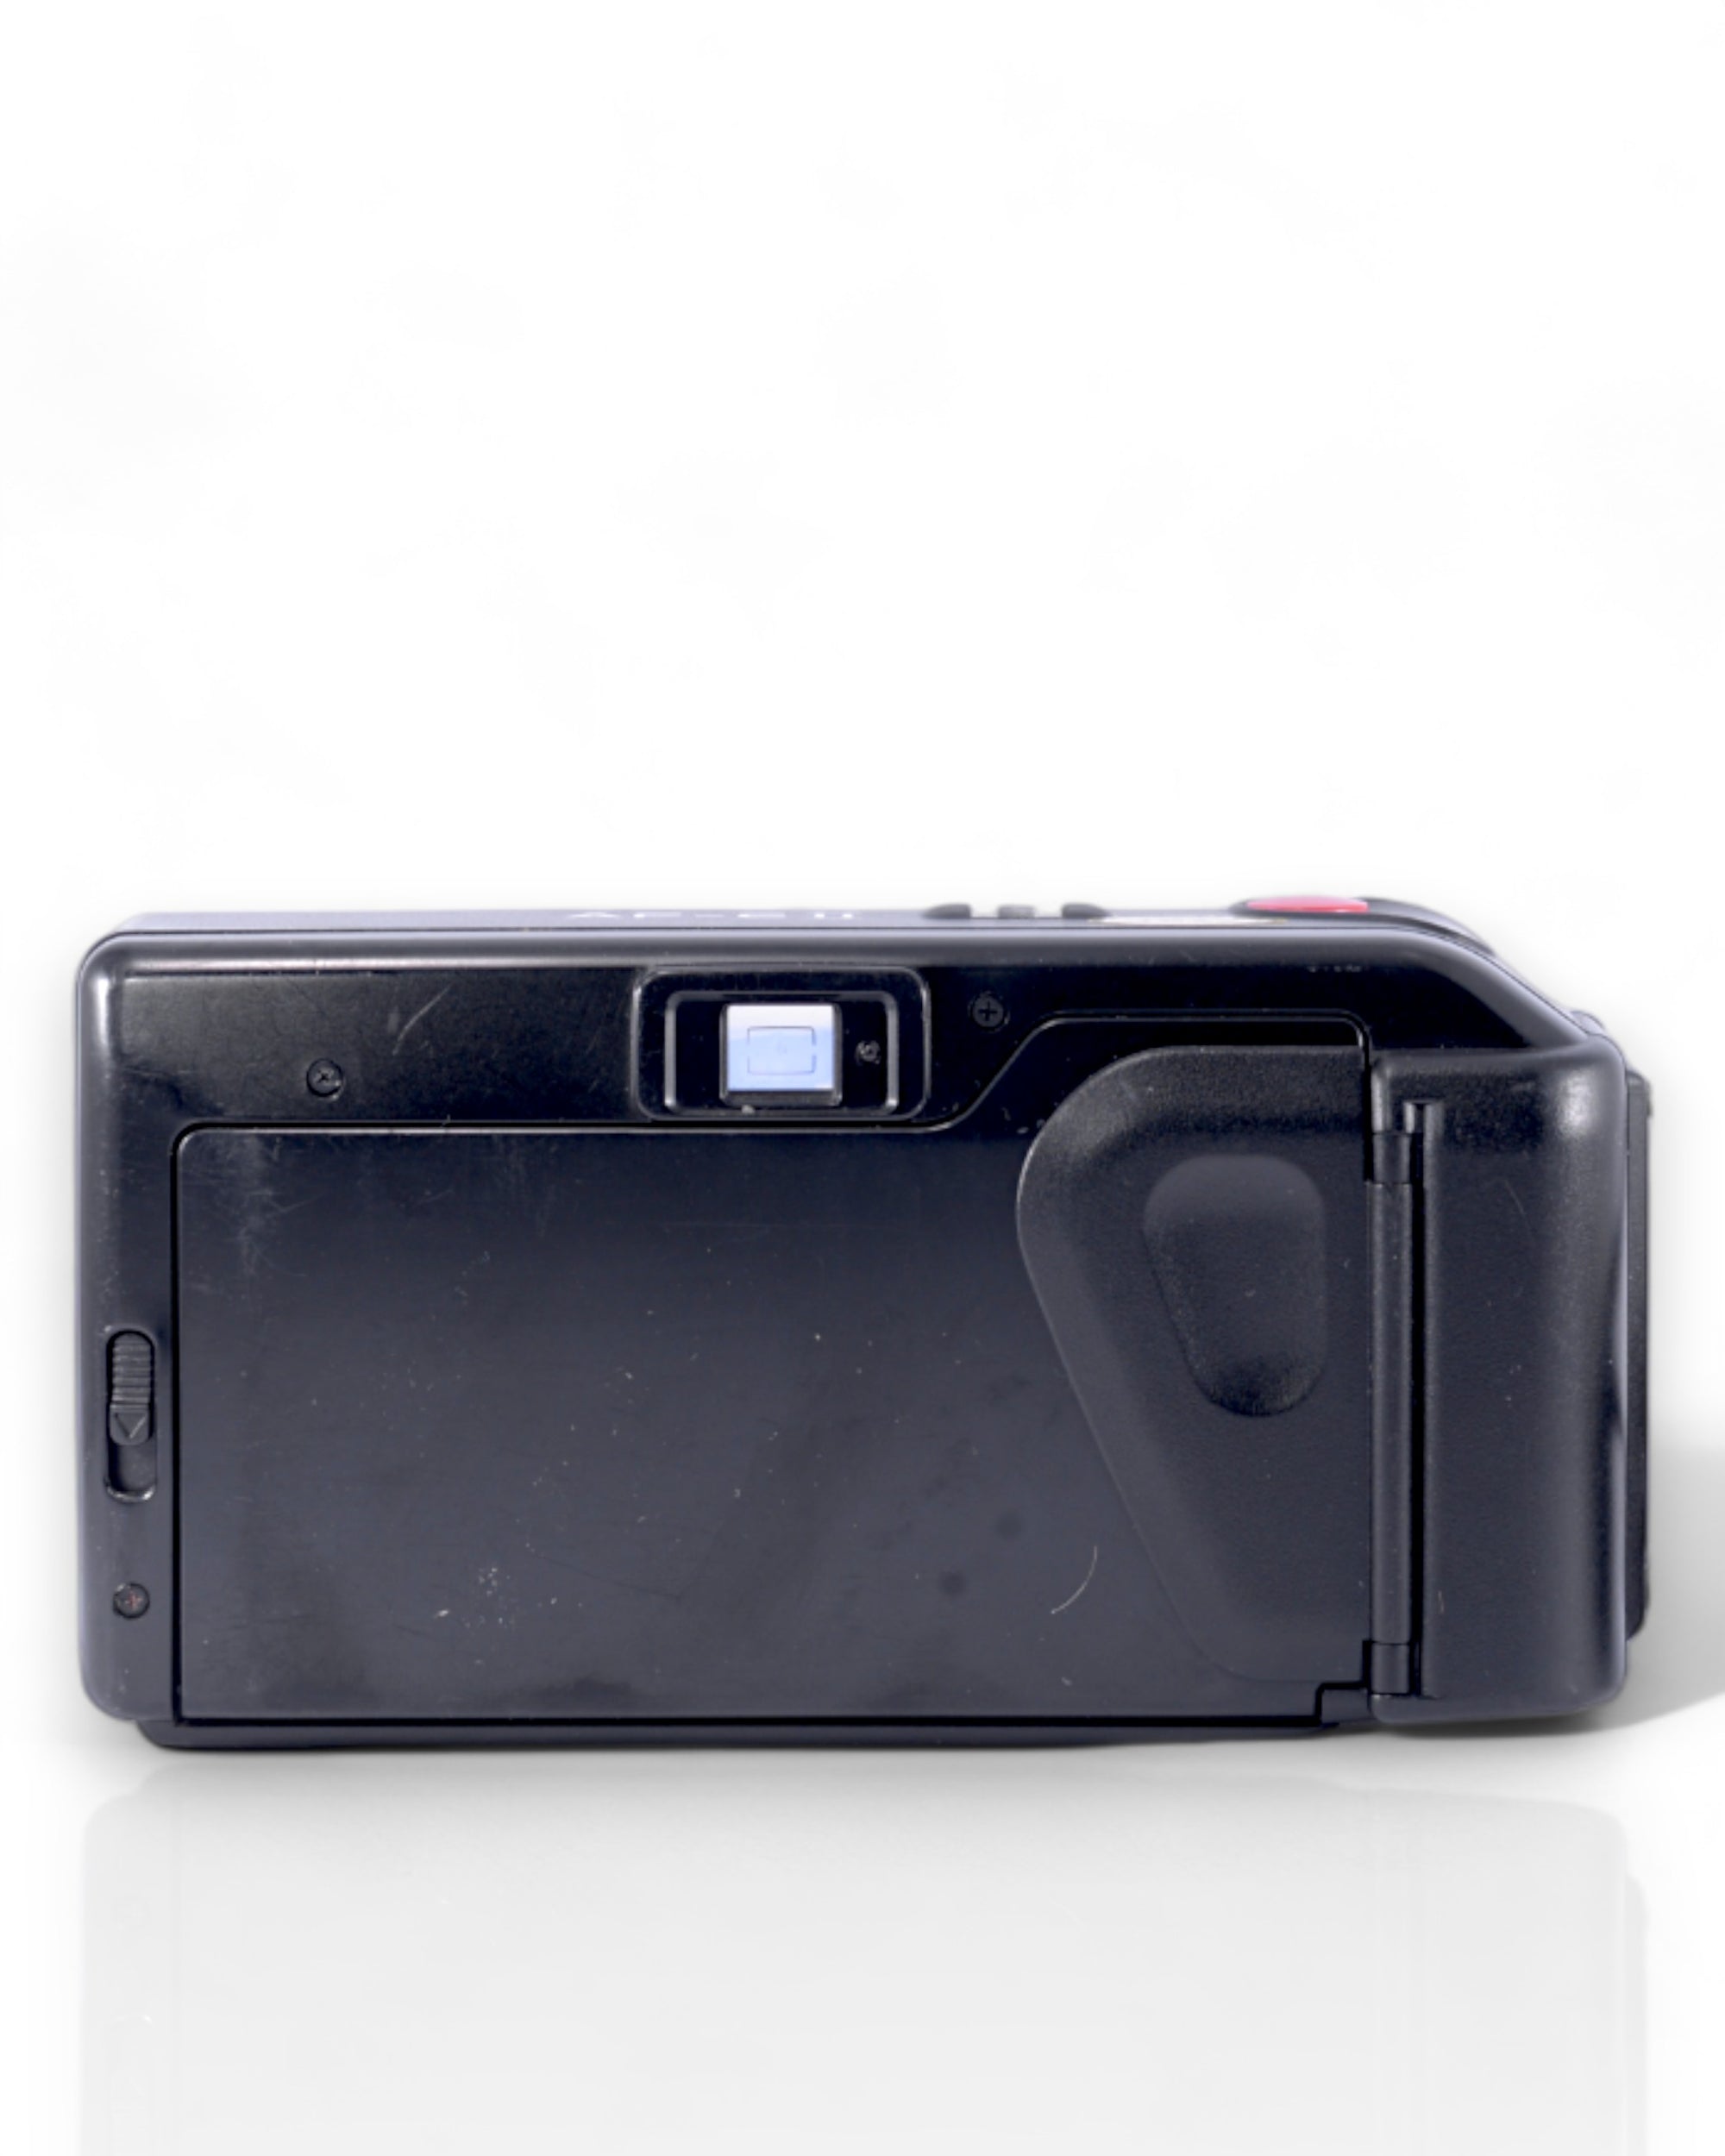 Minolta AF-E II 35mm Point & Shoot Camera